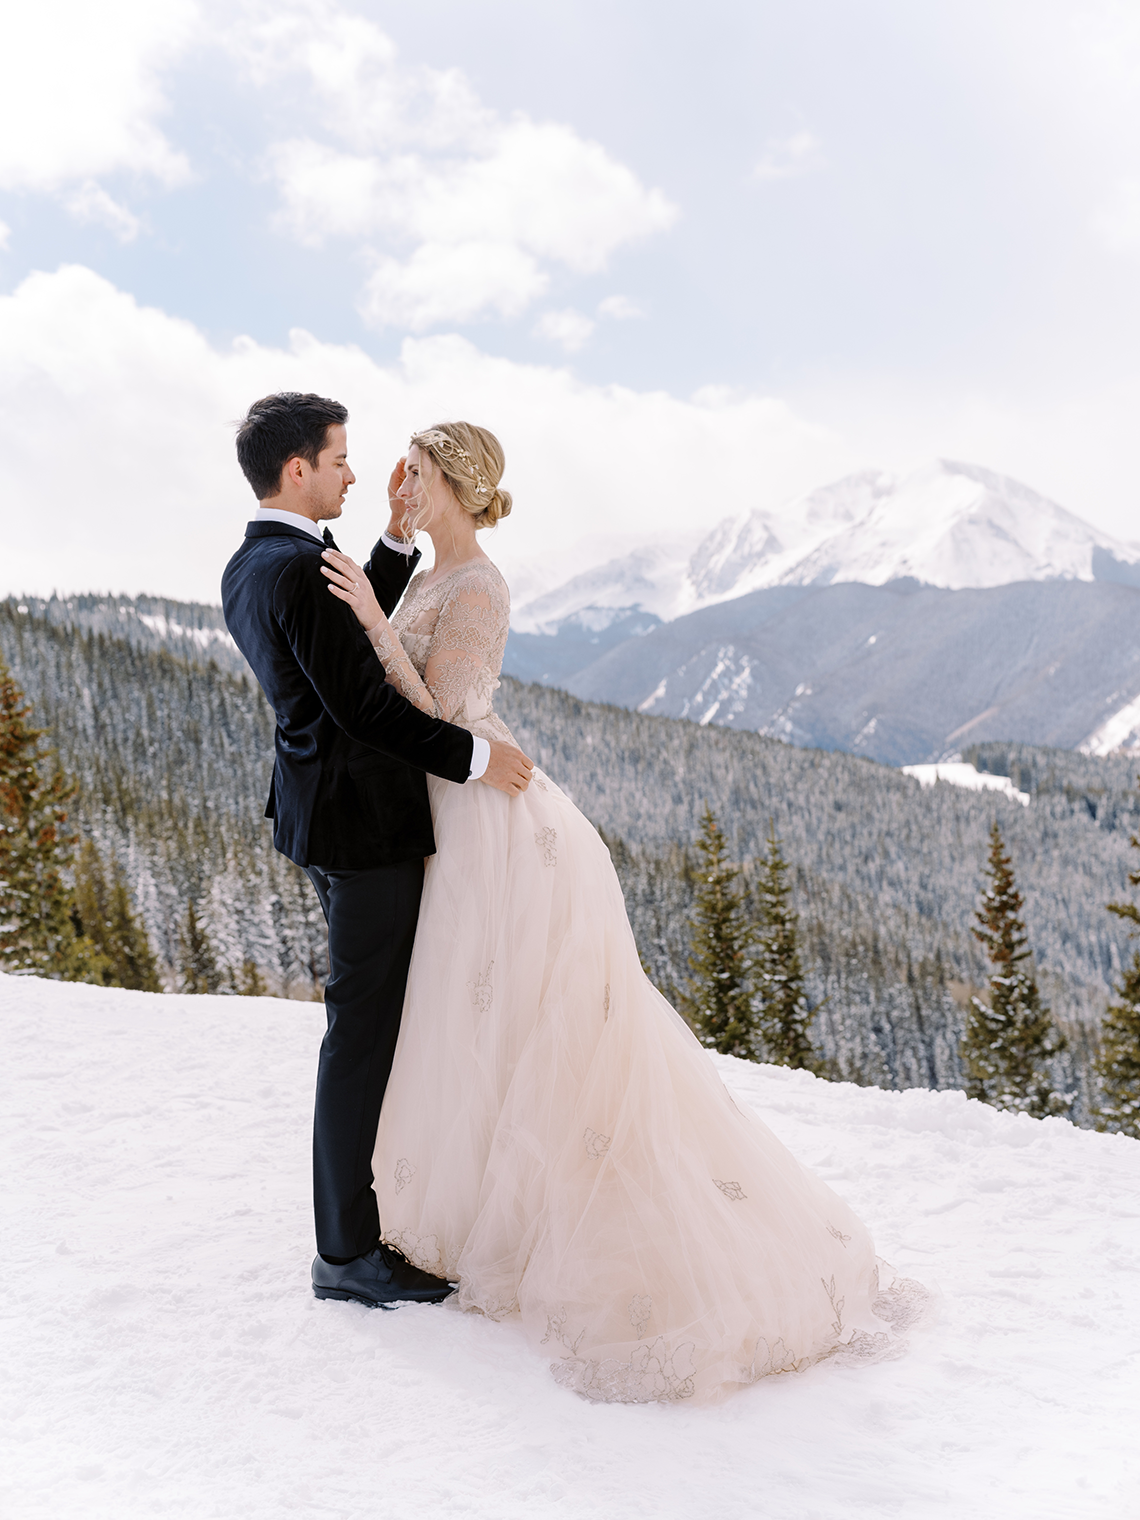 Inspiración para bodas en el país de las maravillas de invierno nevado - La pequeña Nell - Amanda Crean - Eventos de Greenwood - Pensamientos de boda 25